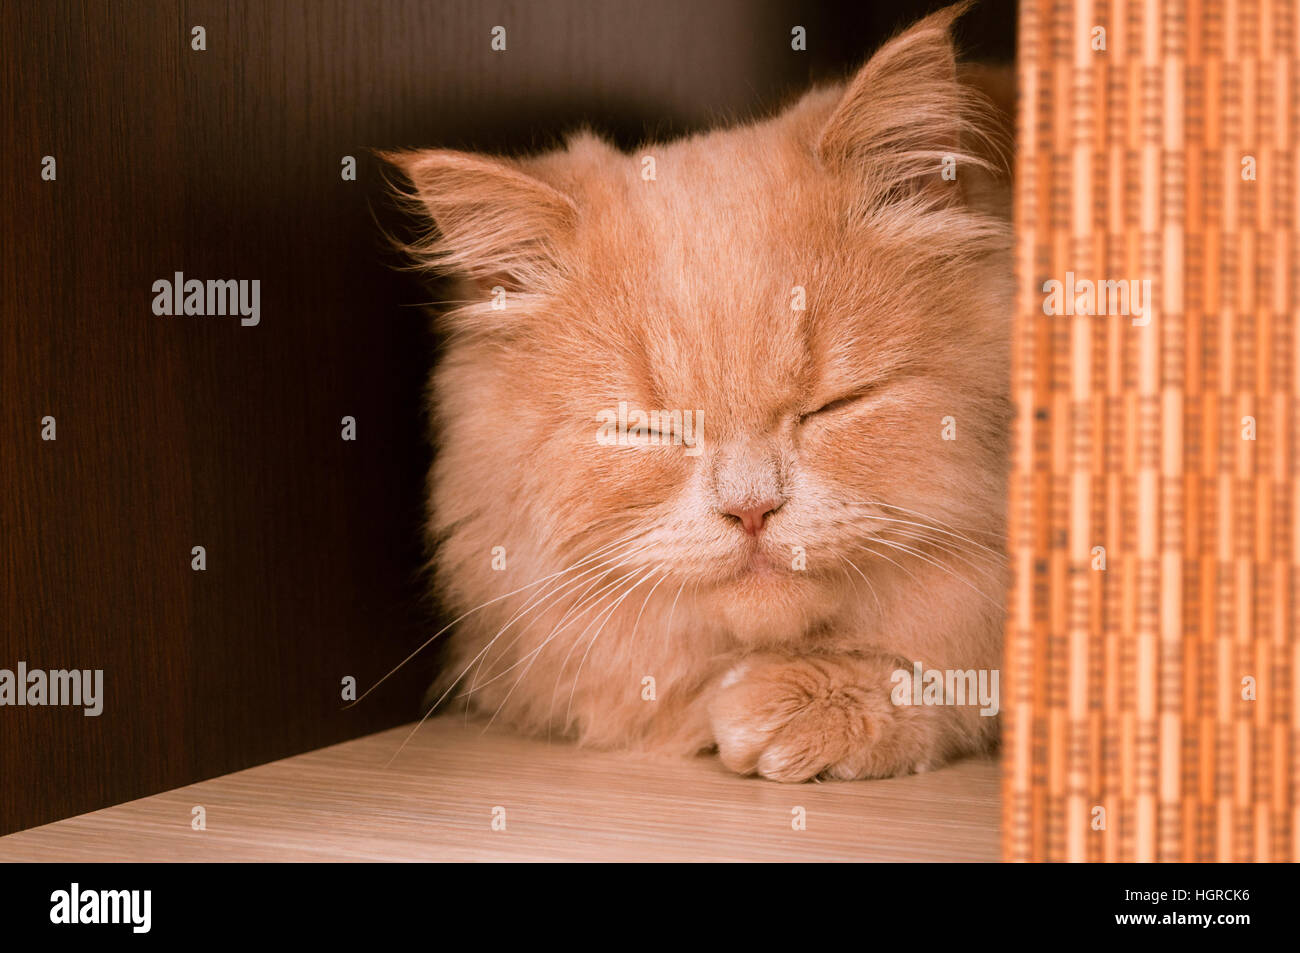 Visage de chat de gingembre ou de couchage intérieur ronronnant avec copie de texte Banque D'Images